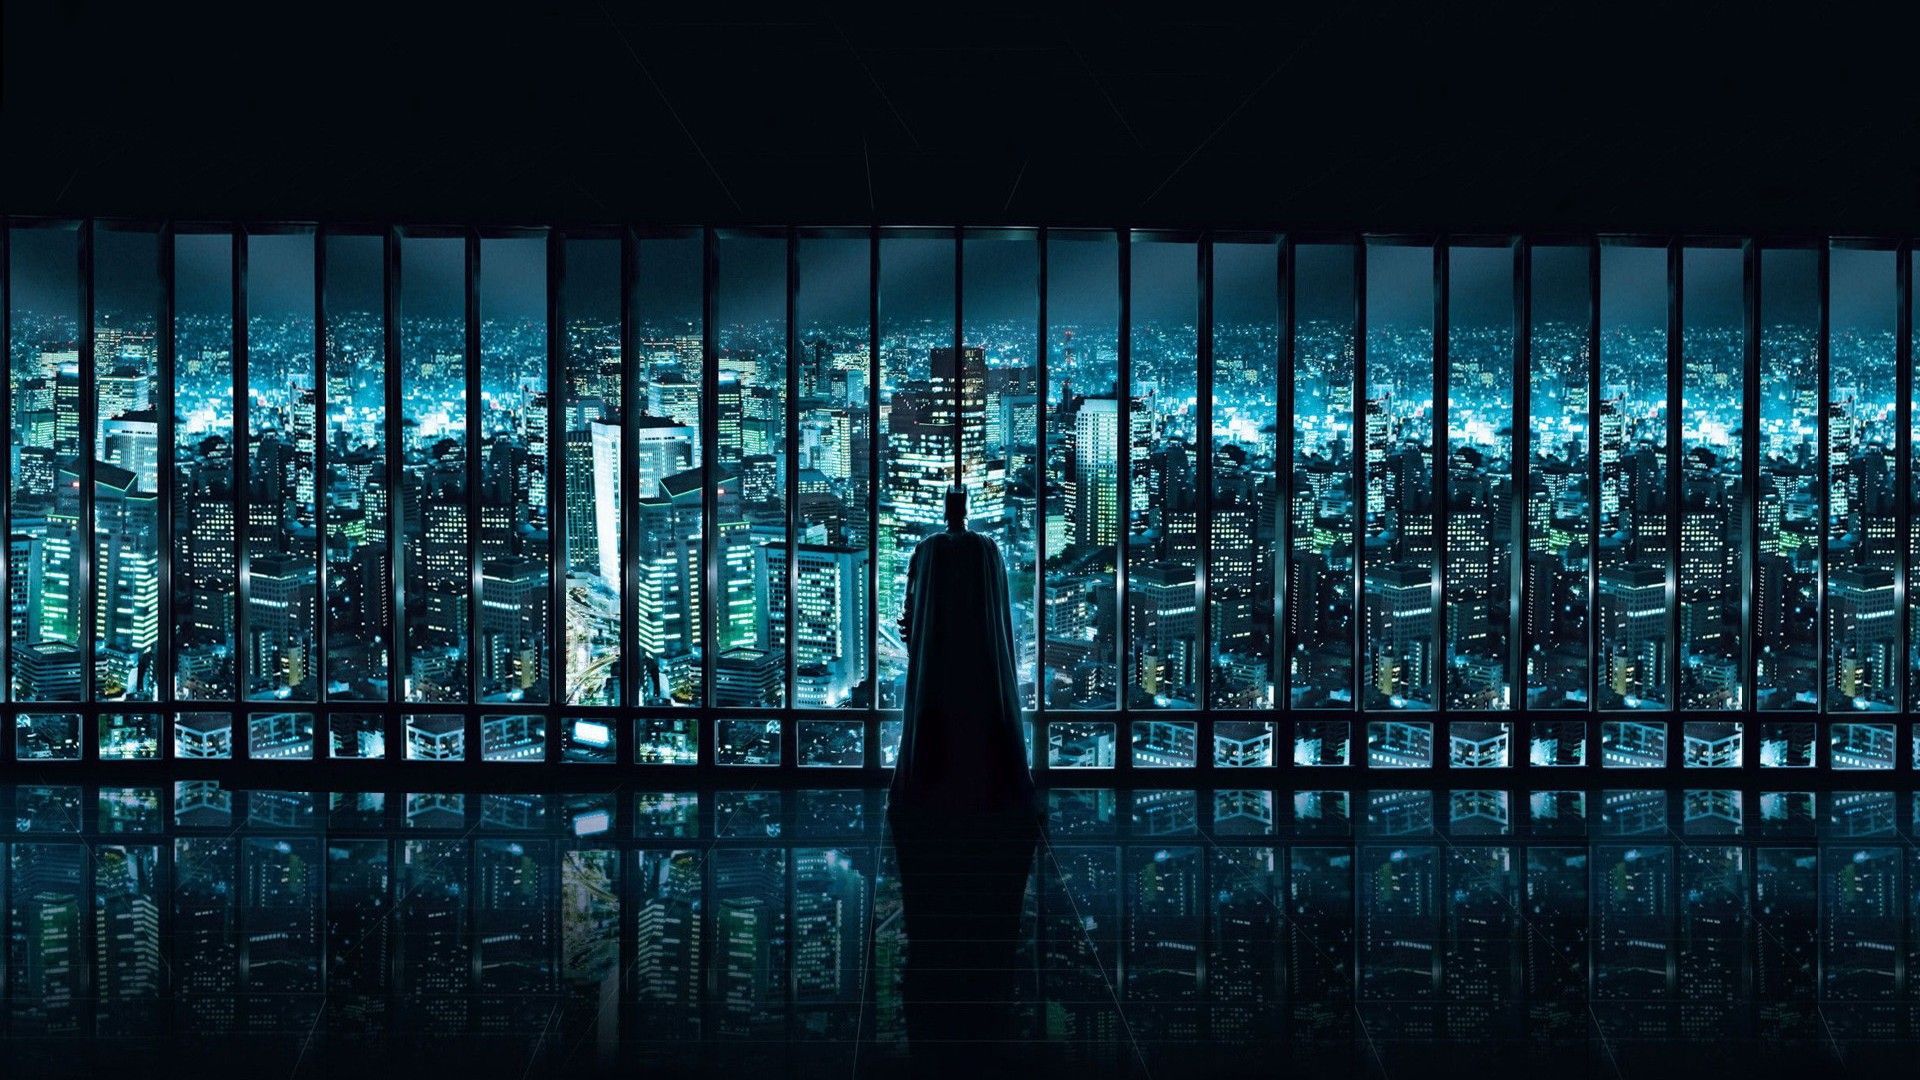 Dark Knight Desktop Wallpapers, Dark Knight Images, New Wallpapers